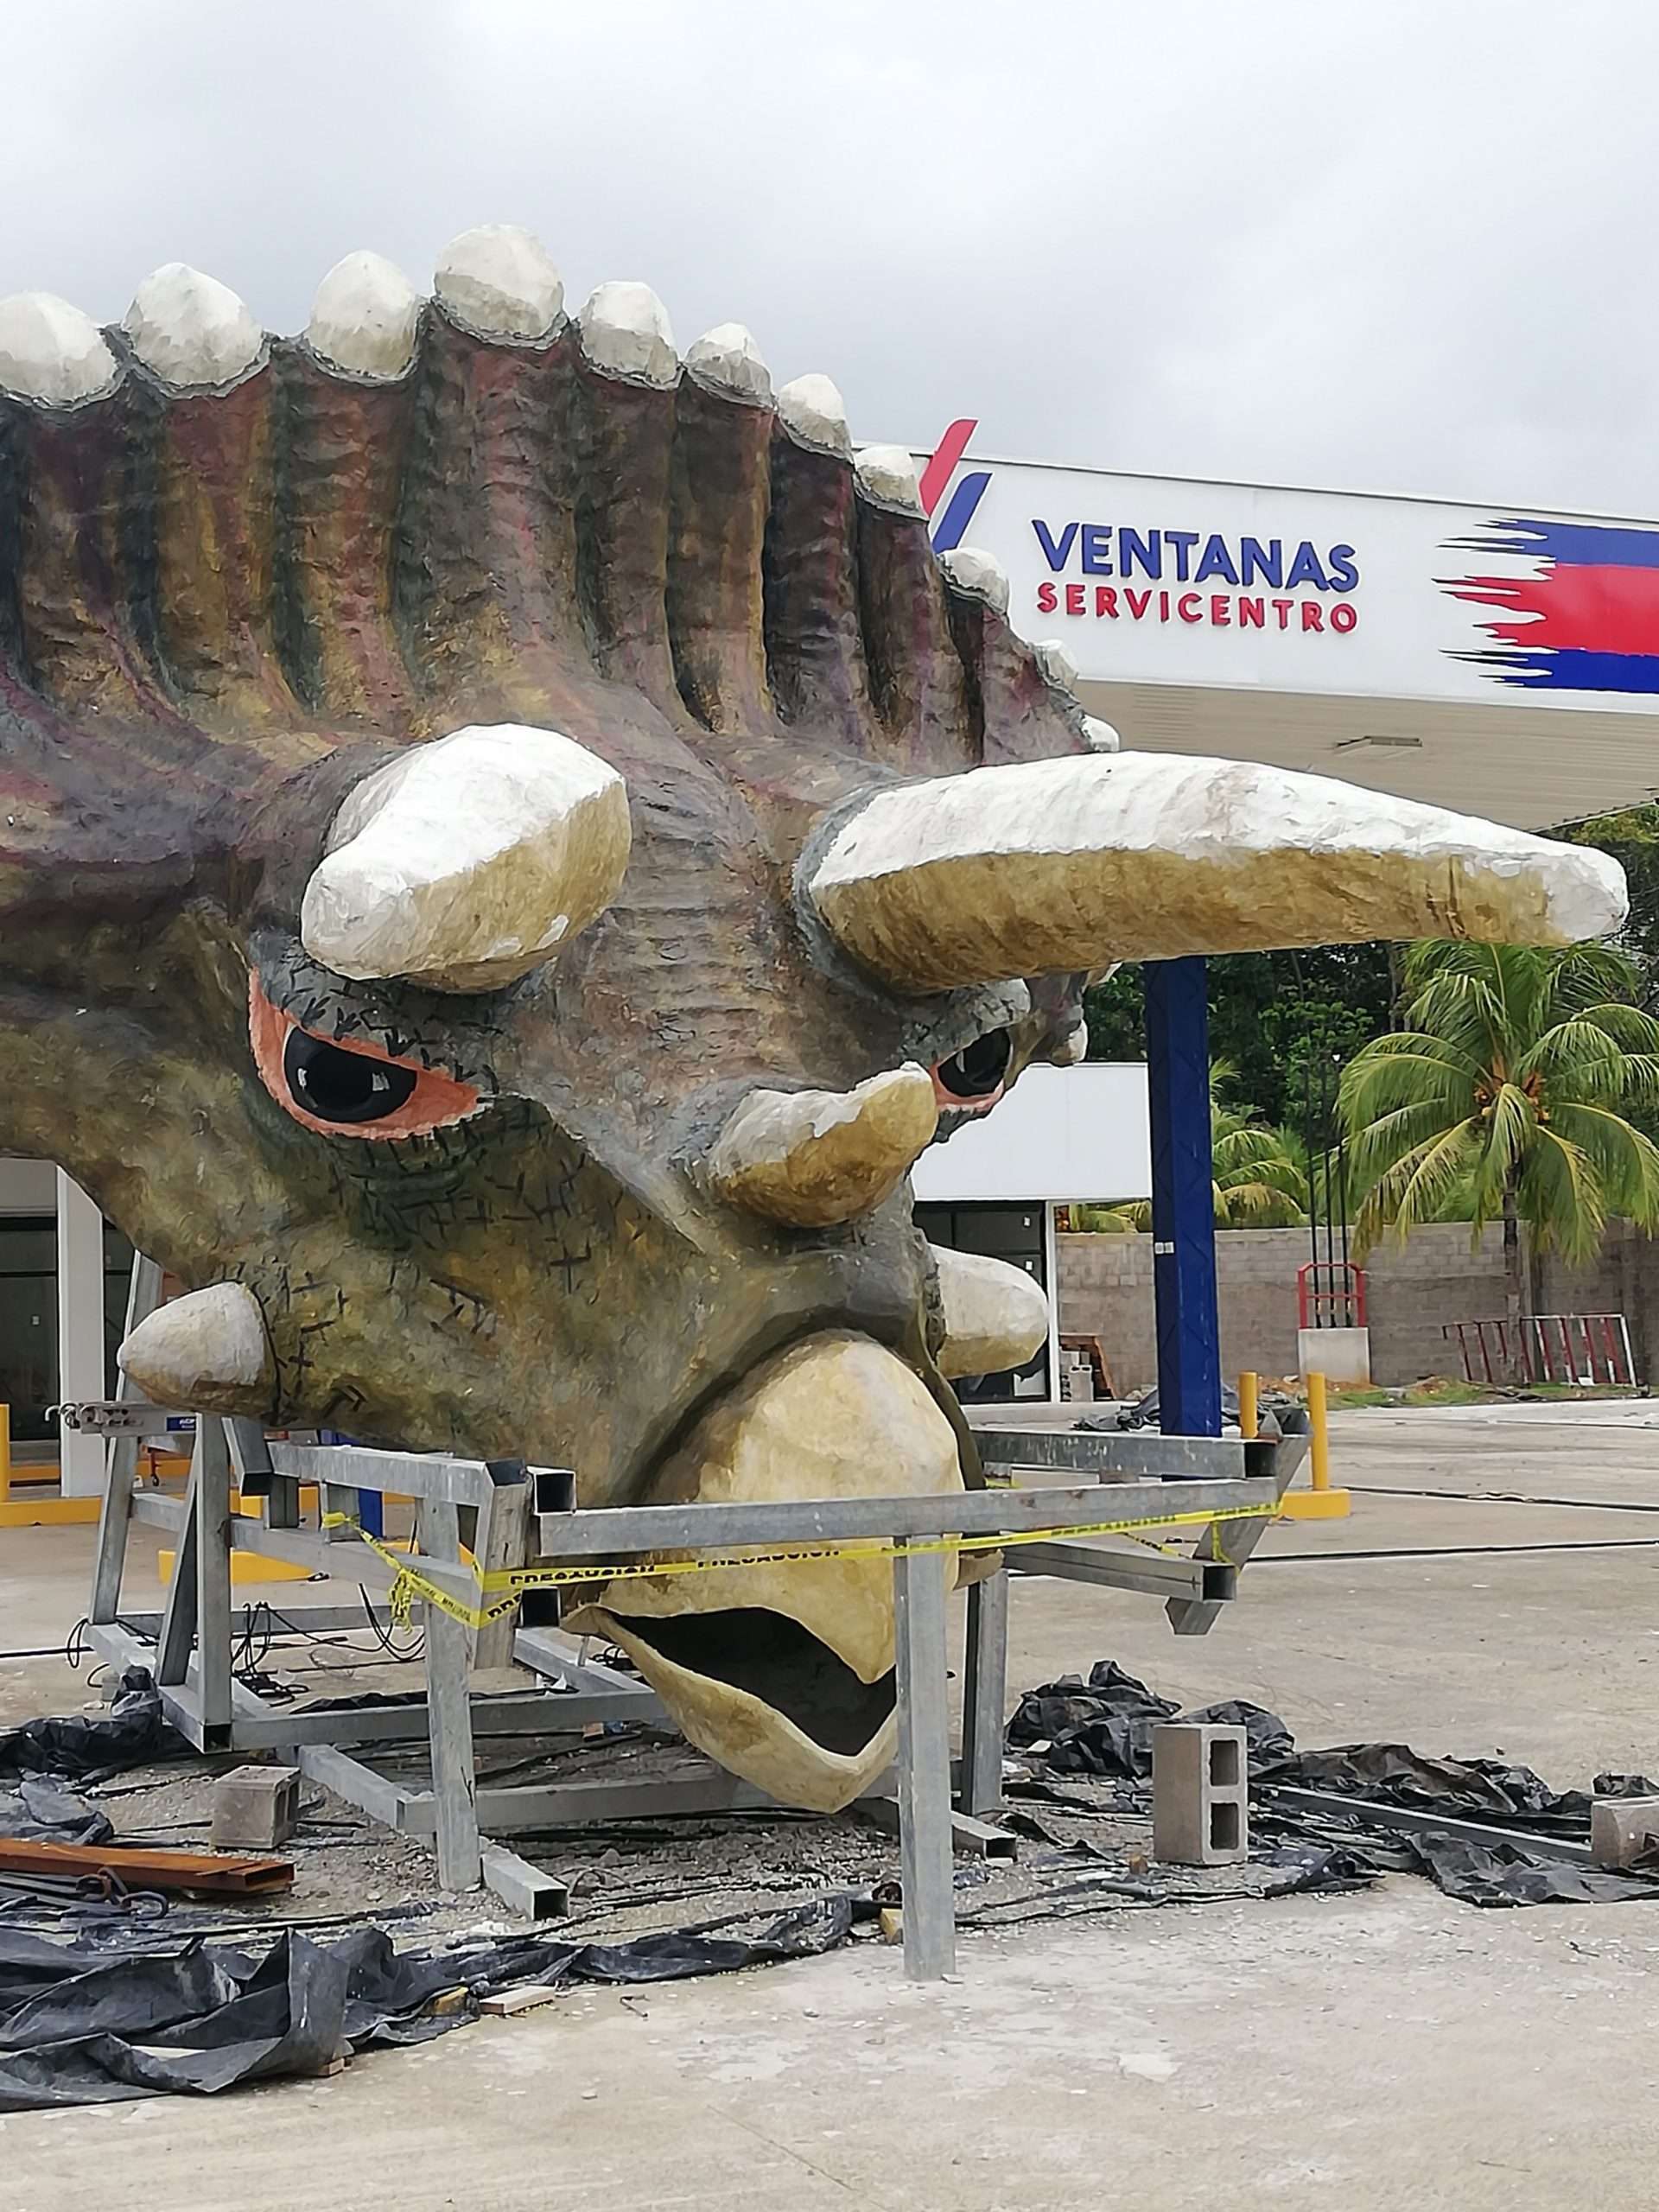 Se Encontraron Dinosaurios En Ojochal, Arte Fantástico 2020